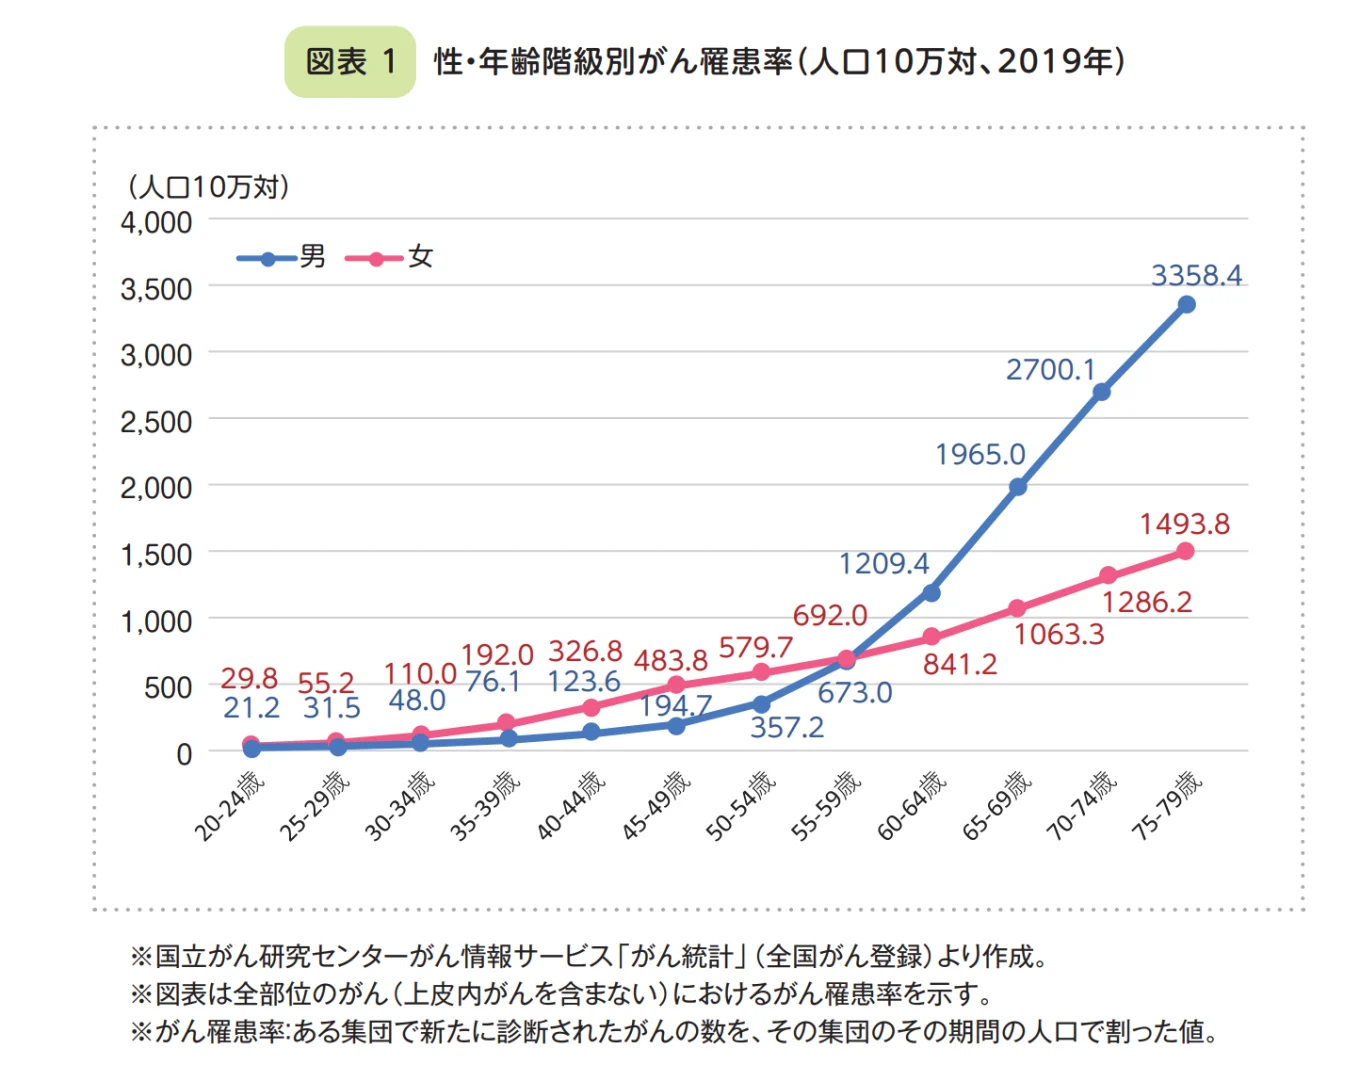 東京都民の推計がん患者数の折れ線グラフ。